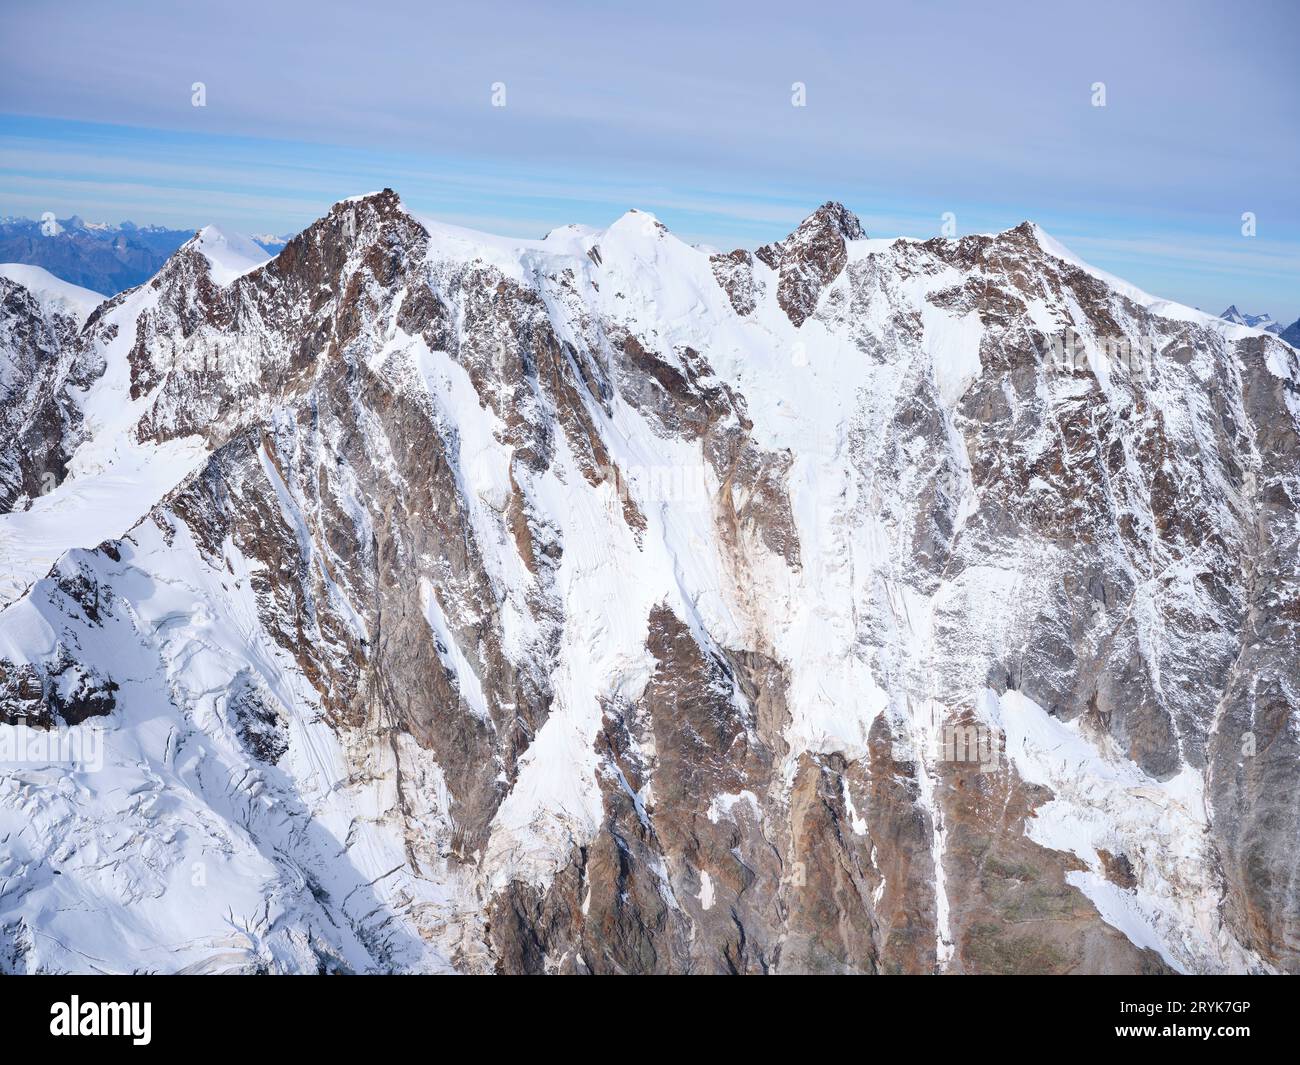 VISTA AEREA. Massiccio del Monte Rosa (quota: 4634 metri) con la sua imponente grande parete orientale. Provincia del Verbano-Cusio-Ossola, Piemonte, Italia. Foto Stock